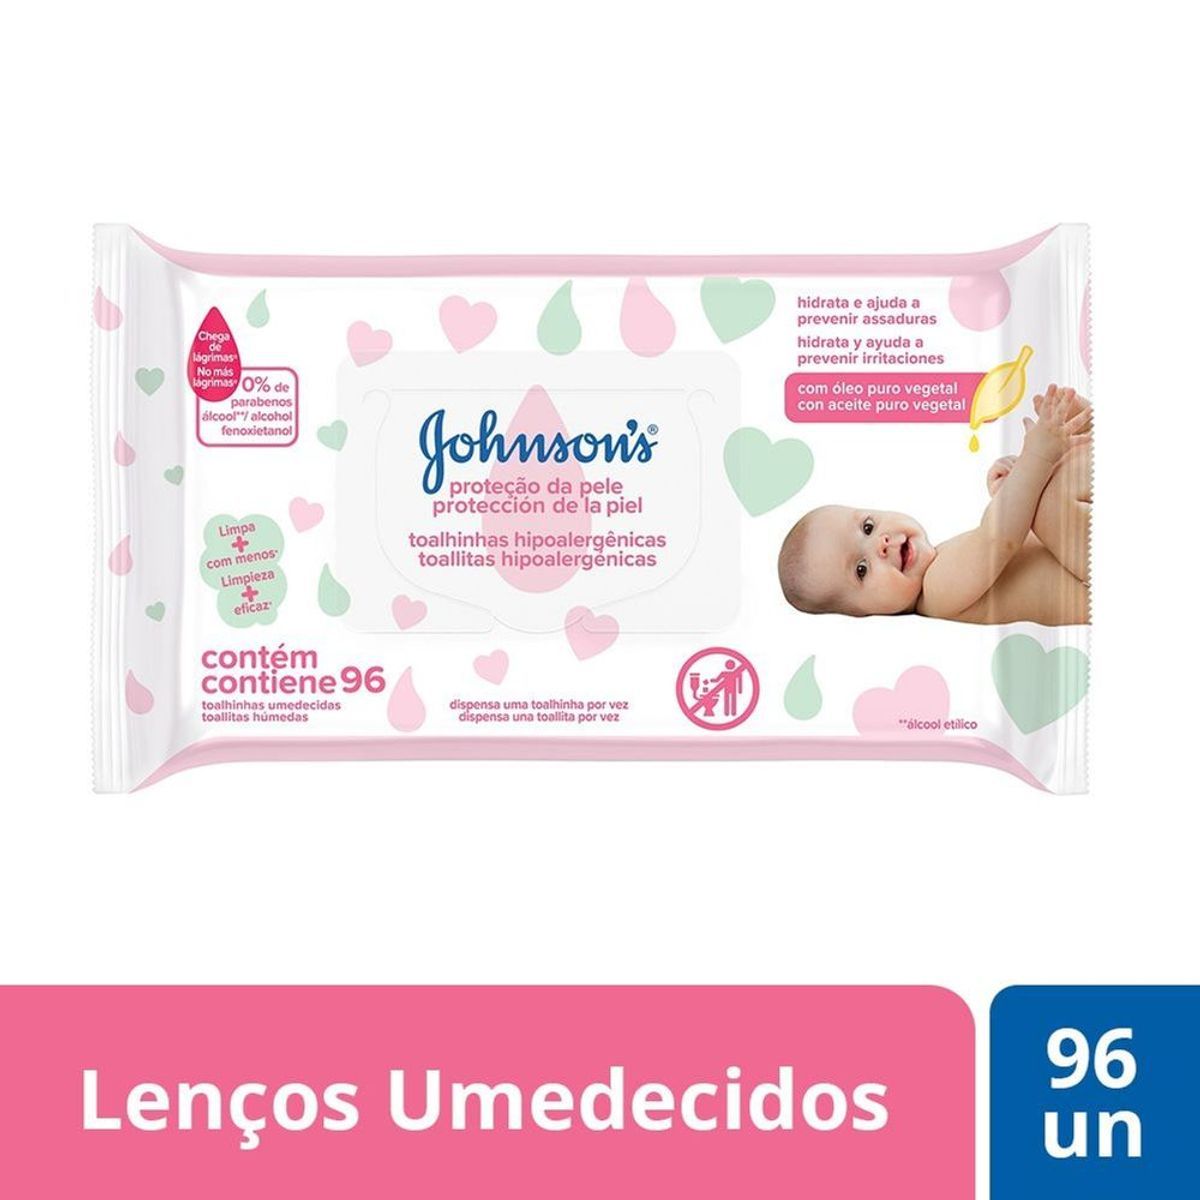 Lenços Umedecidos Johnson's Baby Extra Cuidado 96 unidades image number 1